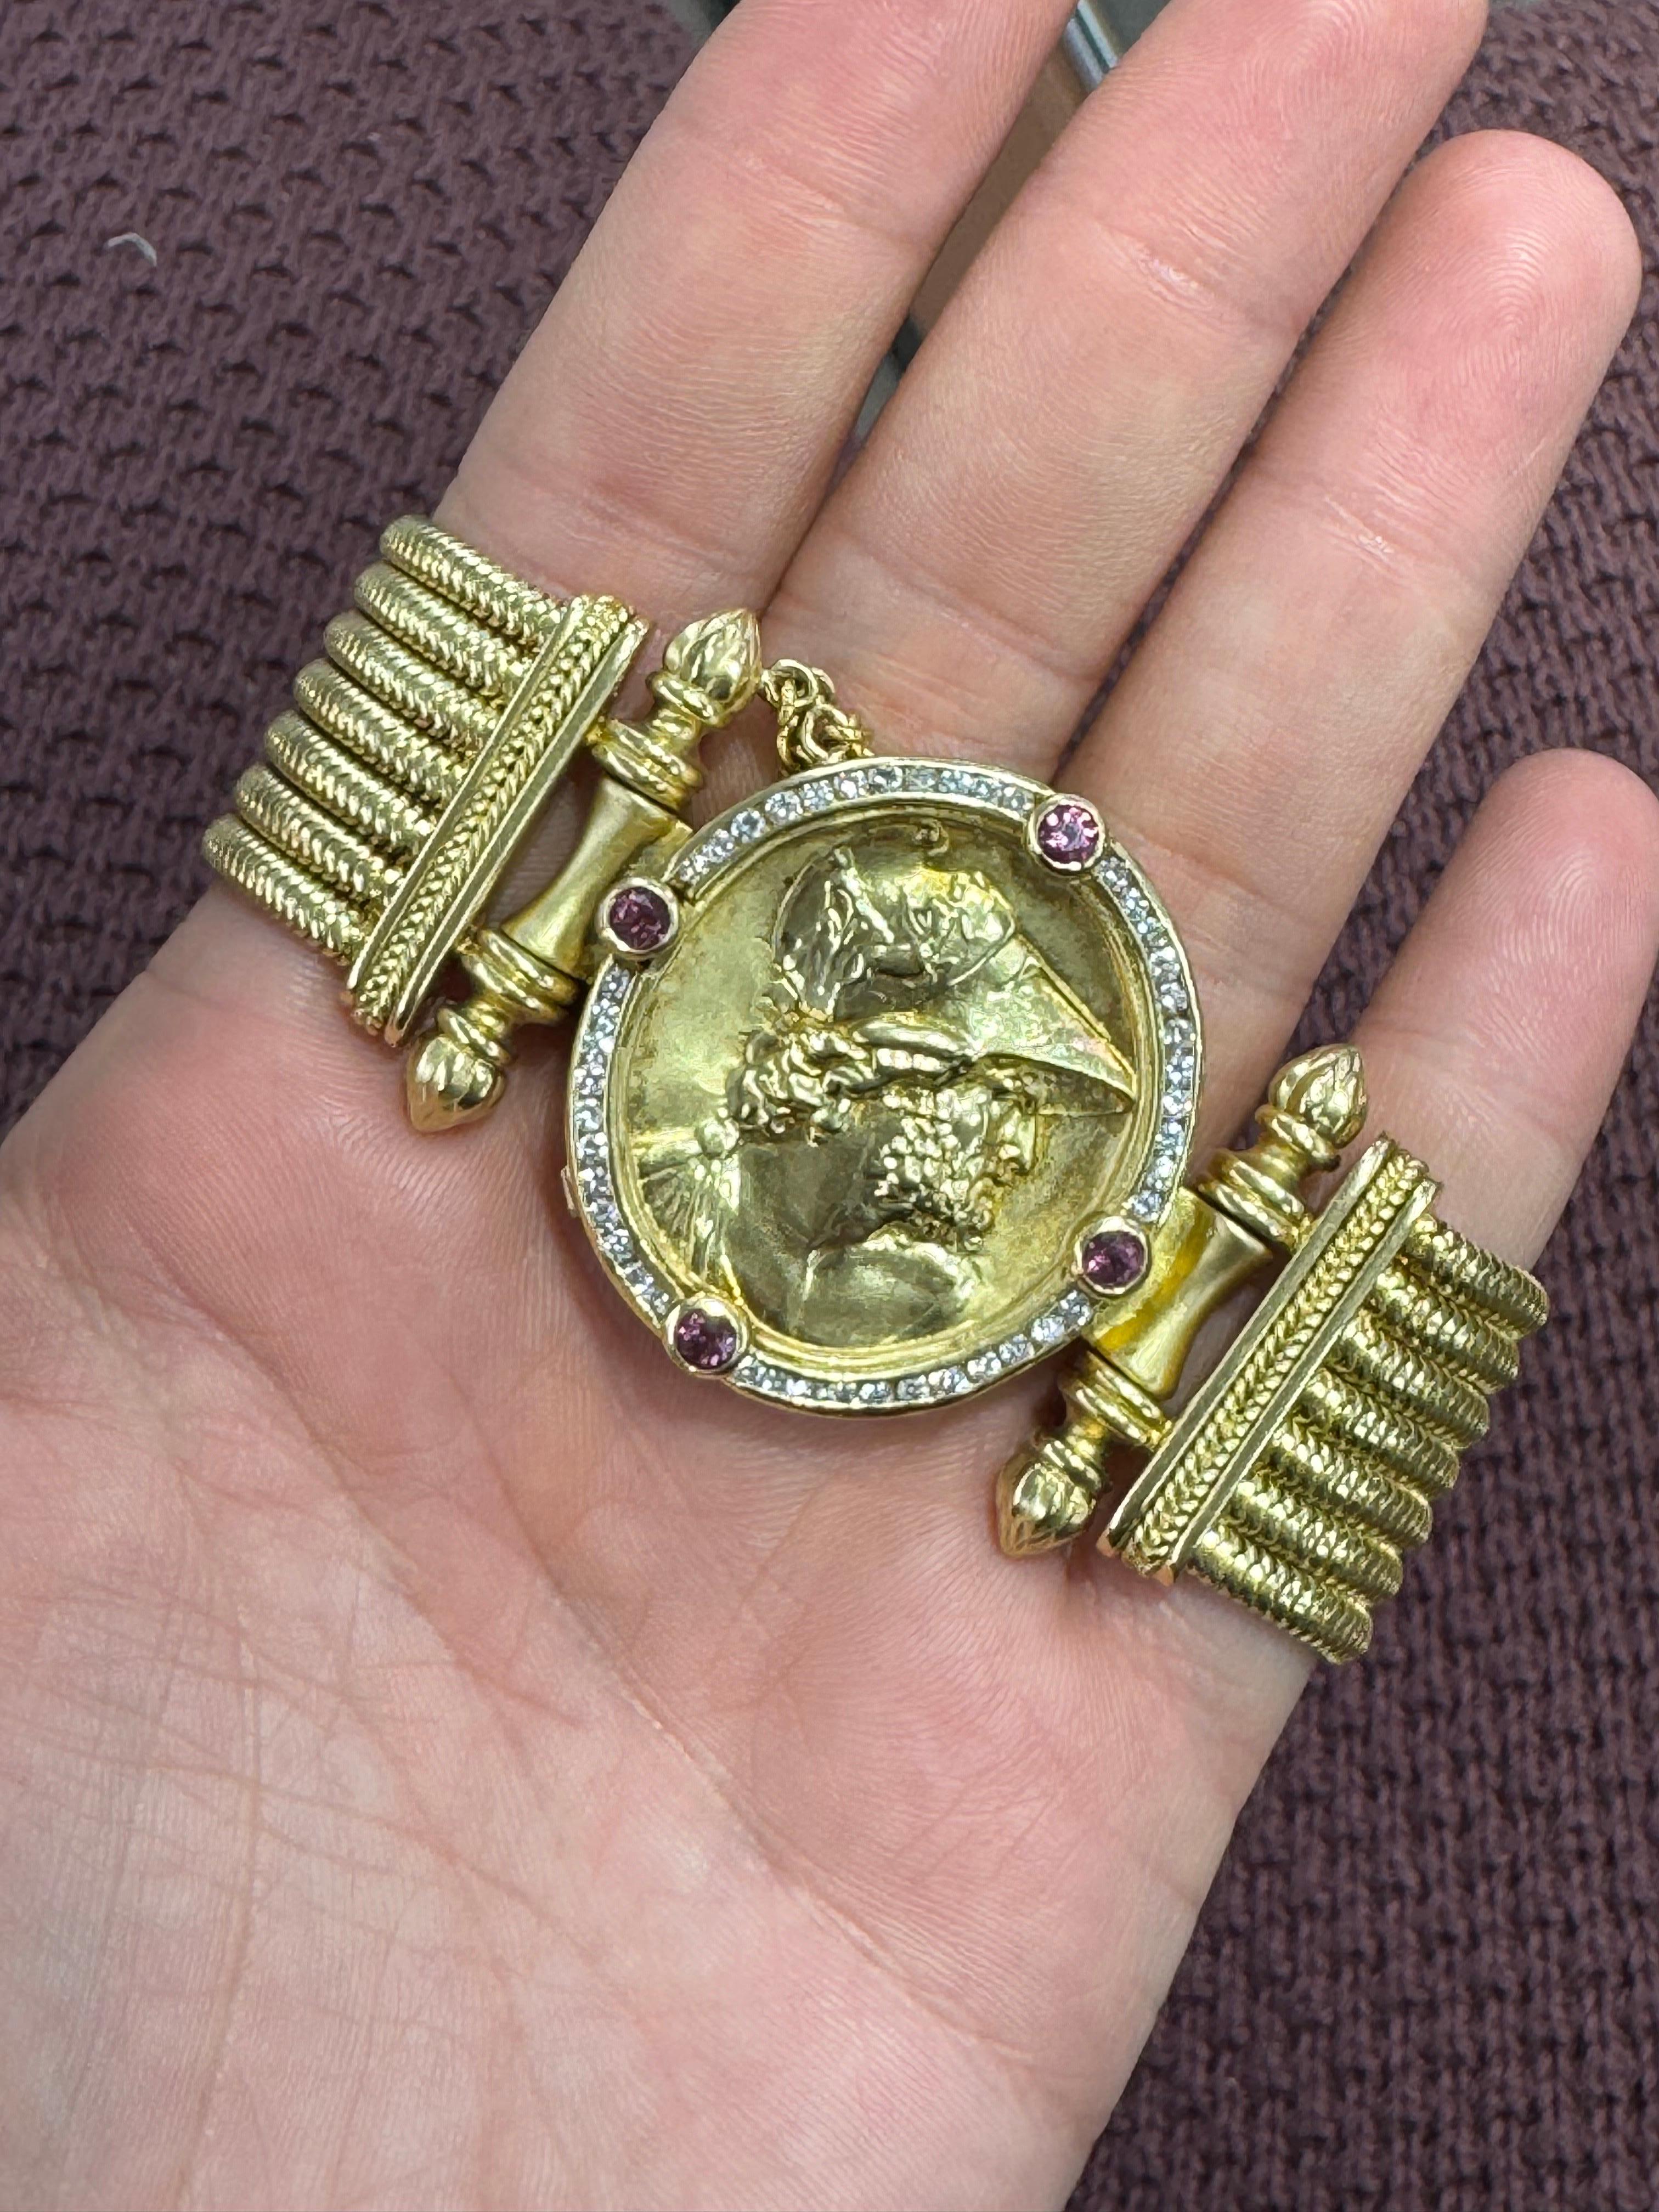 Signiert SeidenGang, dieses Armband verfügt über 7 mehrreihige Schlangenketten mit einem Diamanten und Cabochon Ruby Münze
 Münze 1,25 Zoll breit